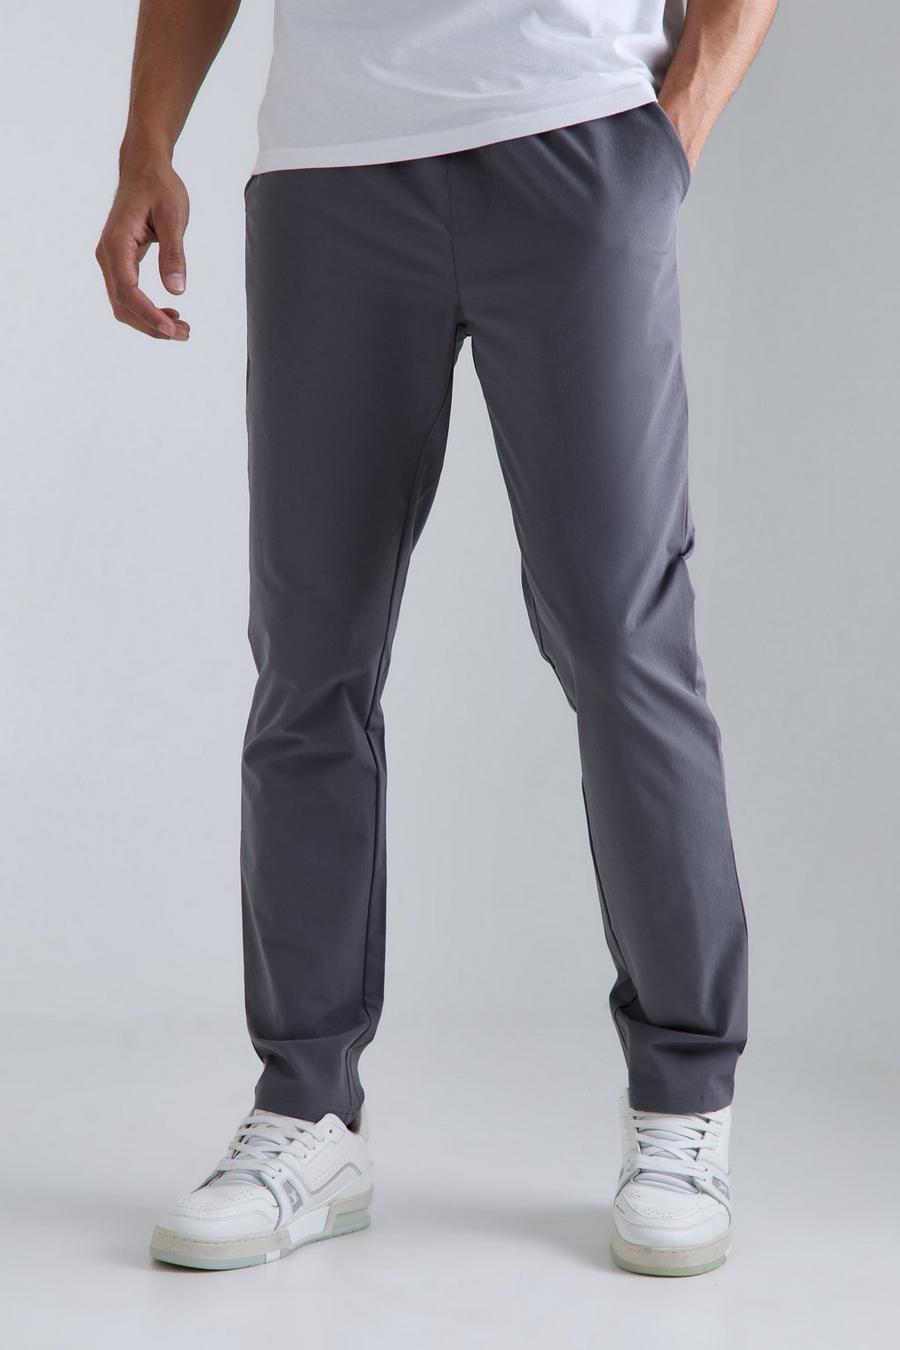 Pantalón técnico ligero ajustado elástico con cintura elástica, Charcoal